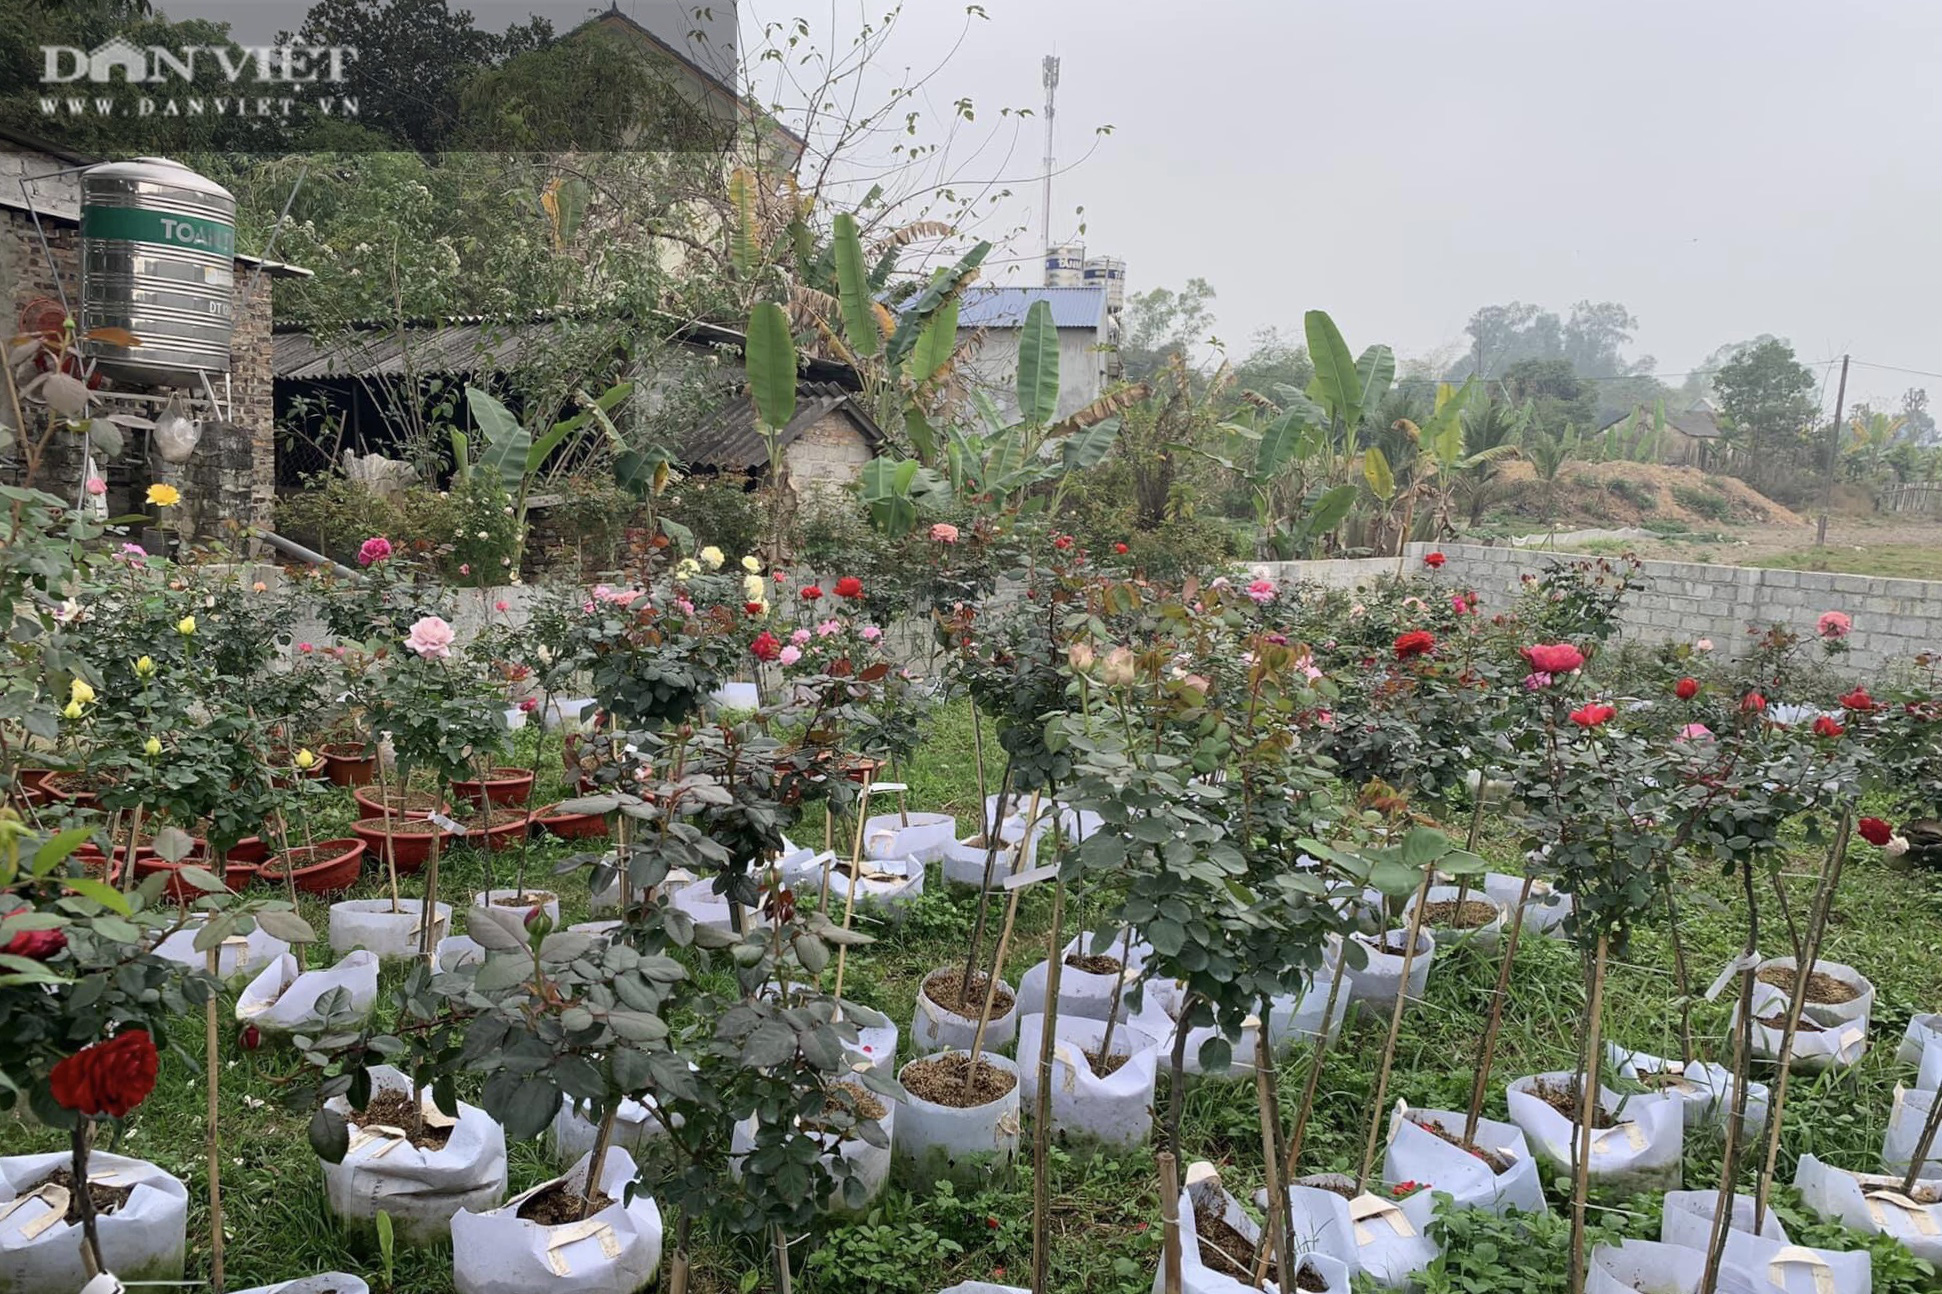 Thái Nguyên: Trai trẻ 8X “gác” bằng đại học về quê trồng thứ hoa thơm ngát cả vùng, kiếm hàng chục triệu đồng mỗi tháng - Ảnh 2.